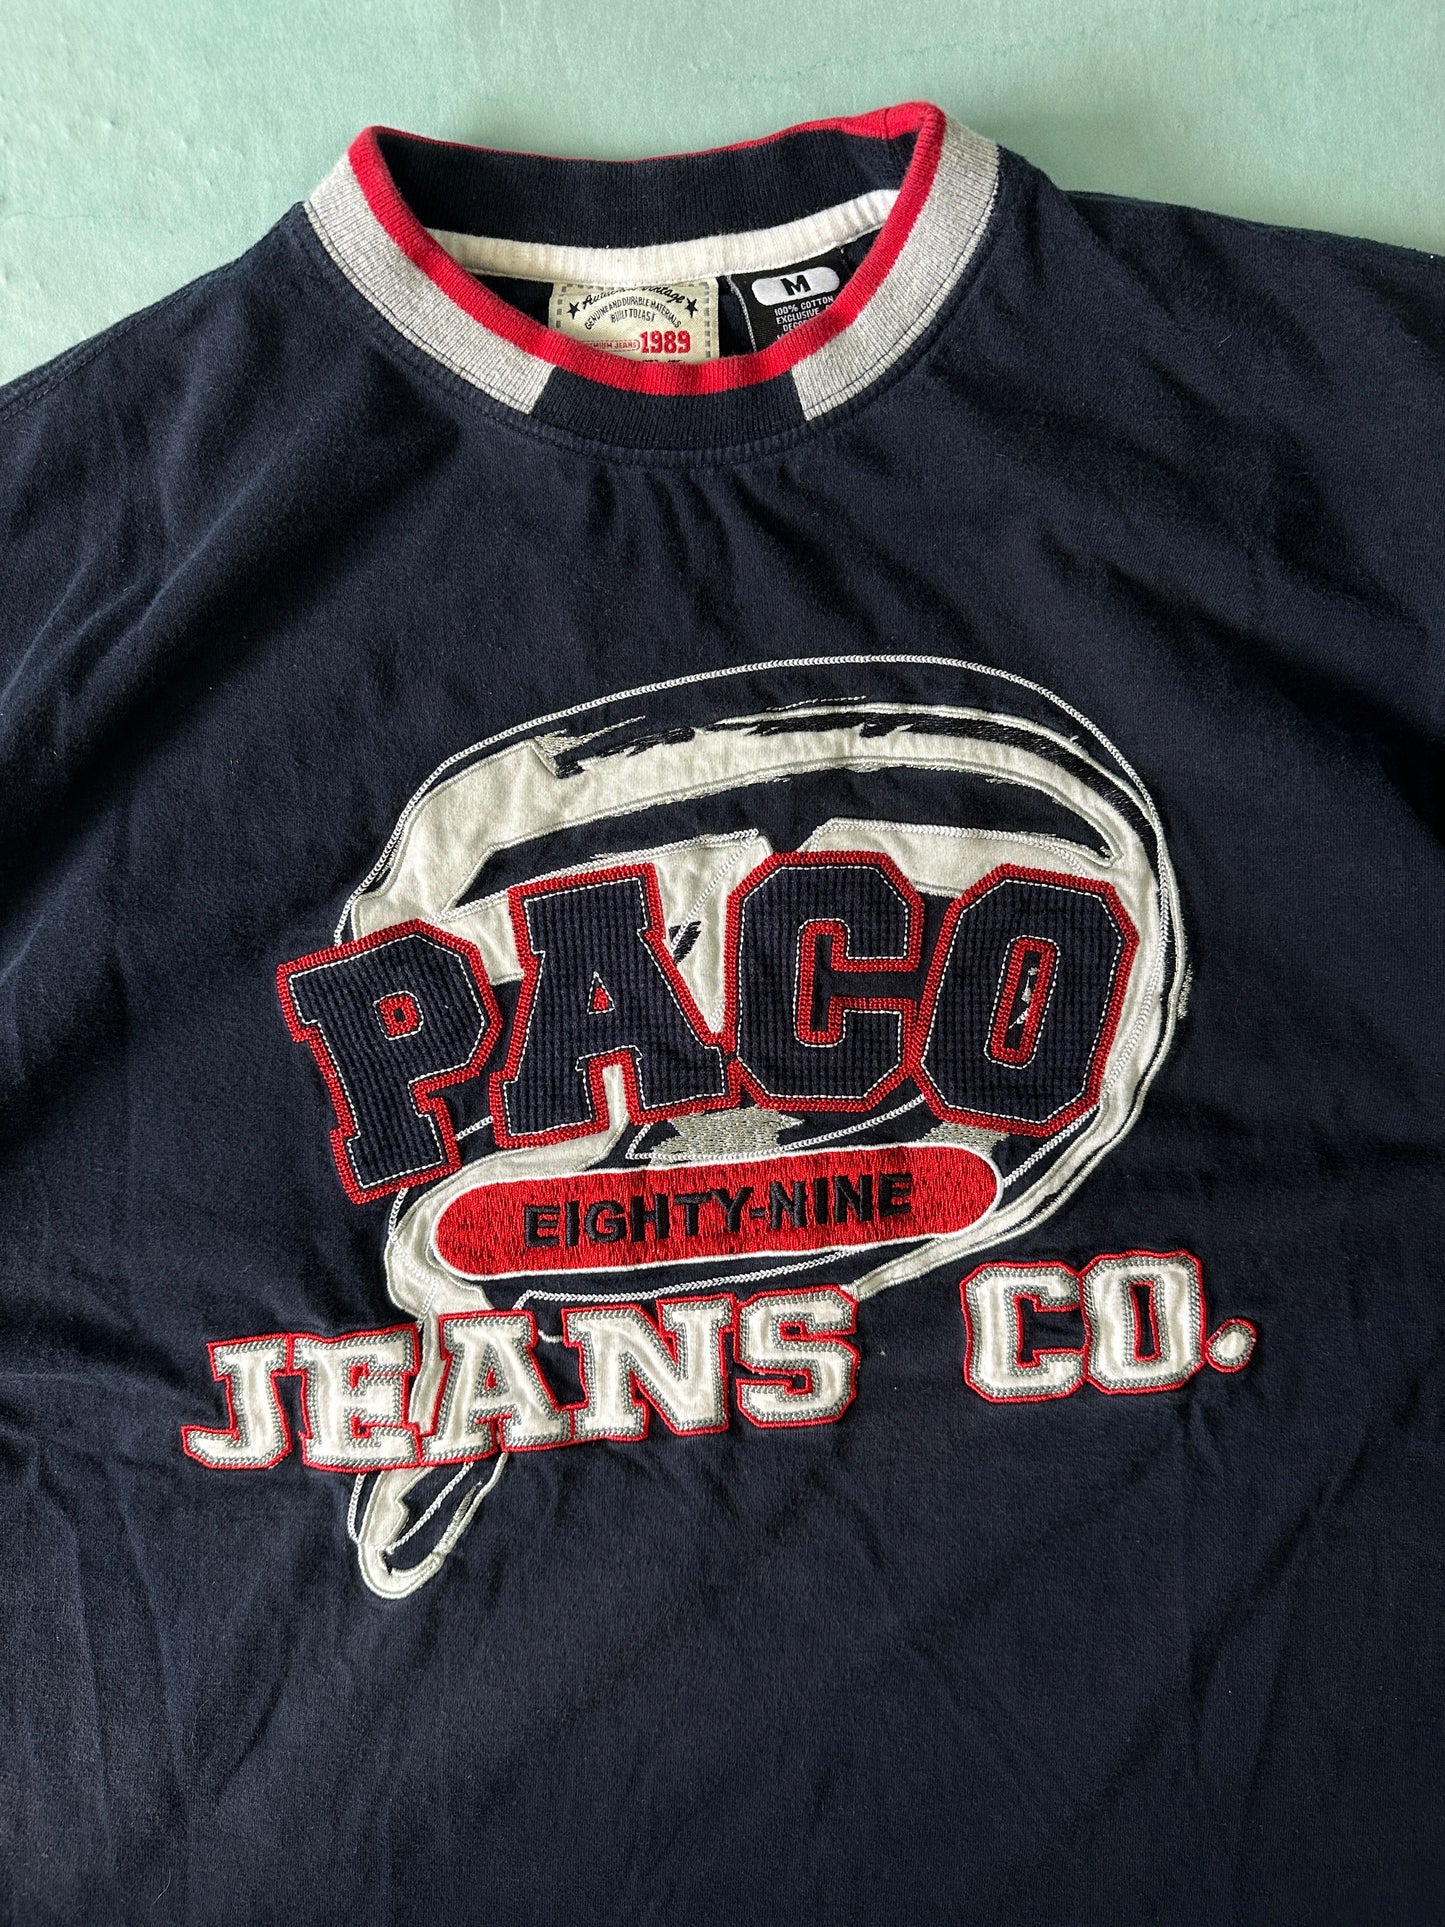 Playera Paco Jeans Vintage - M